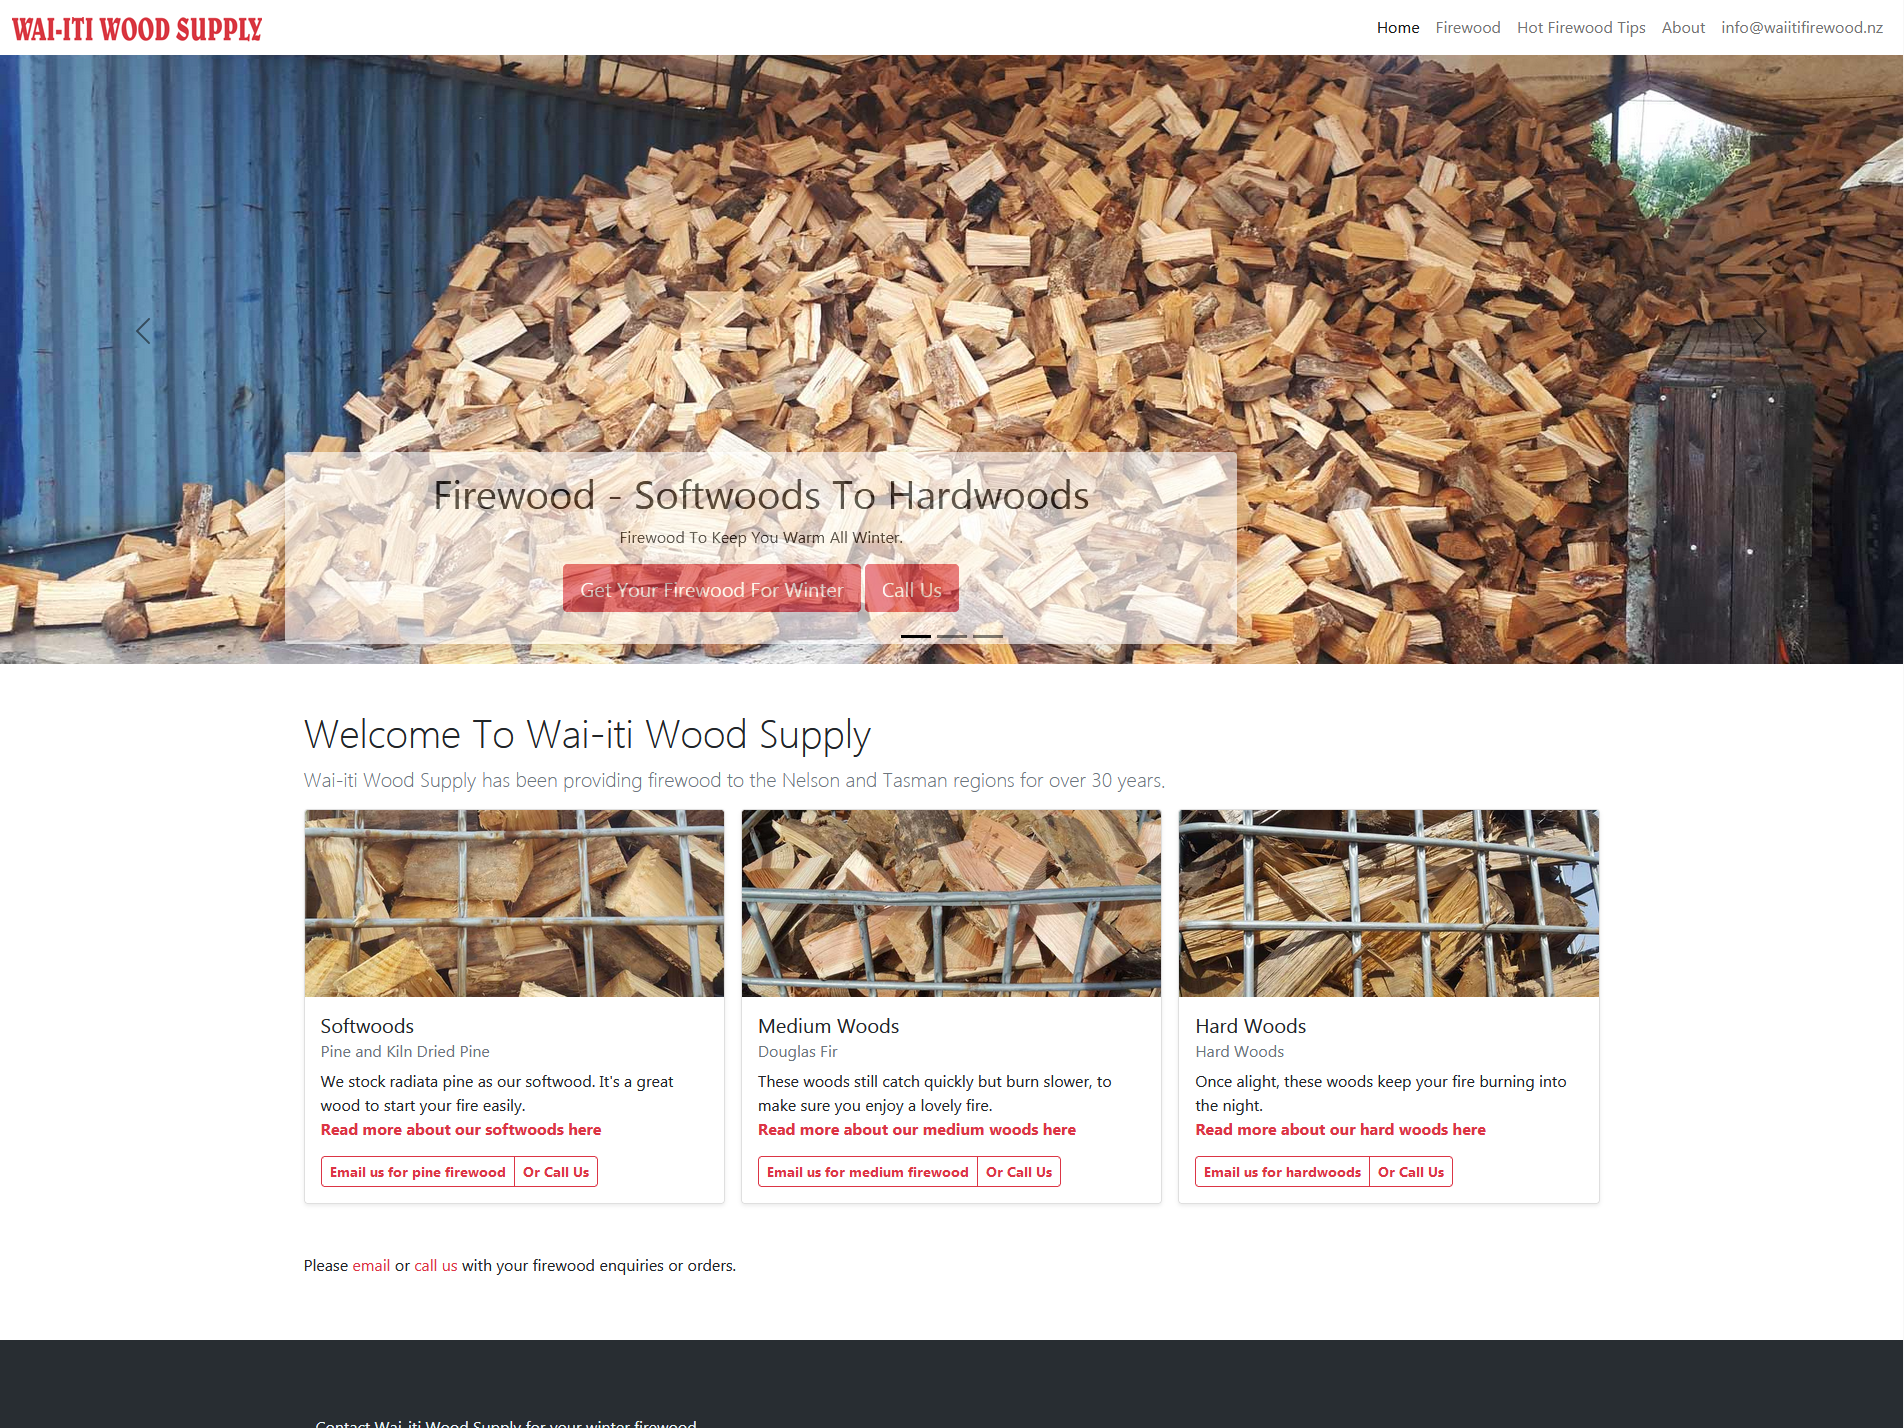 Wai-iti Wood Supply, firewood for Motueka and Nelson